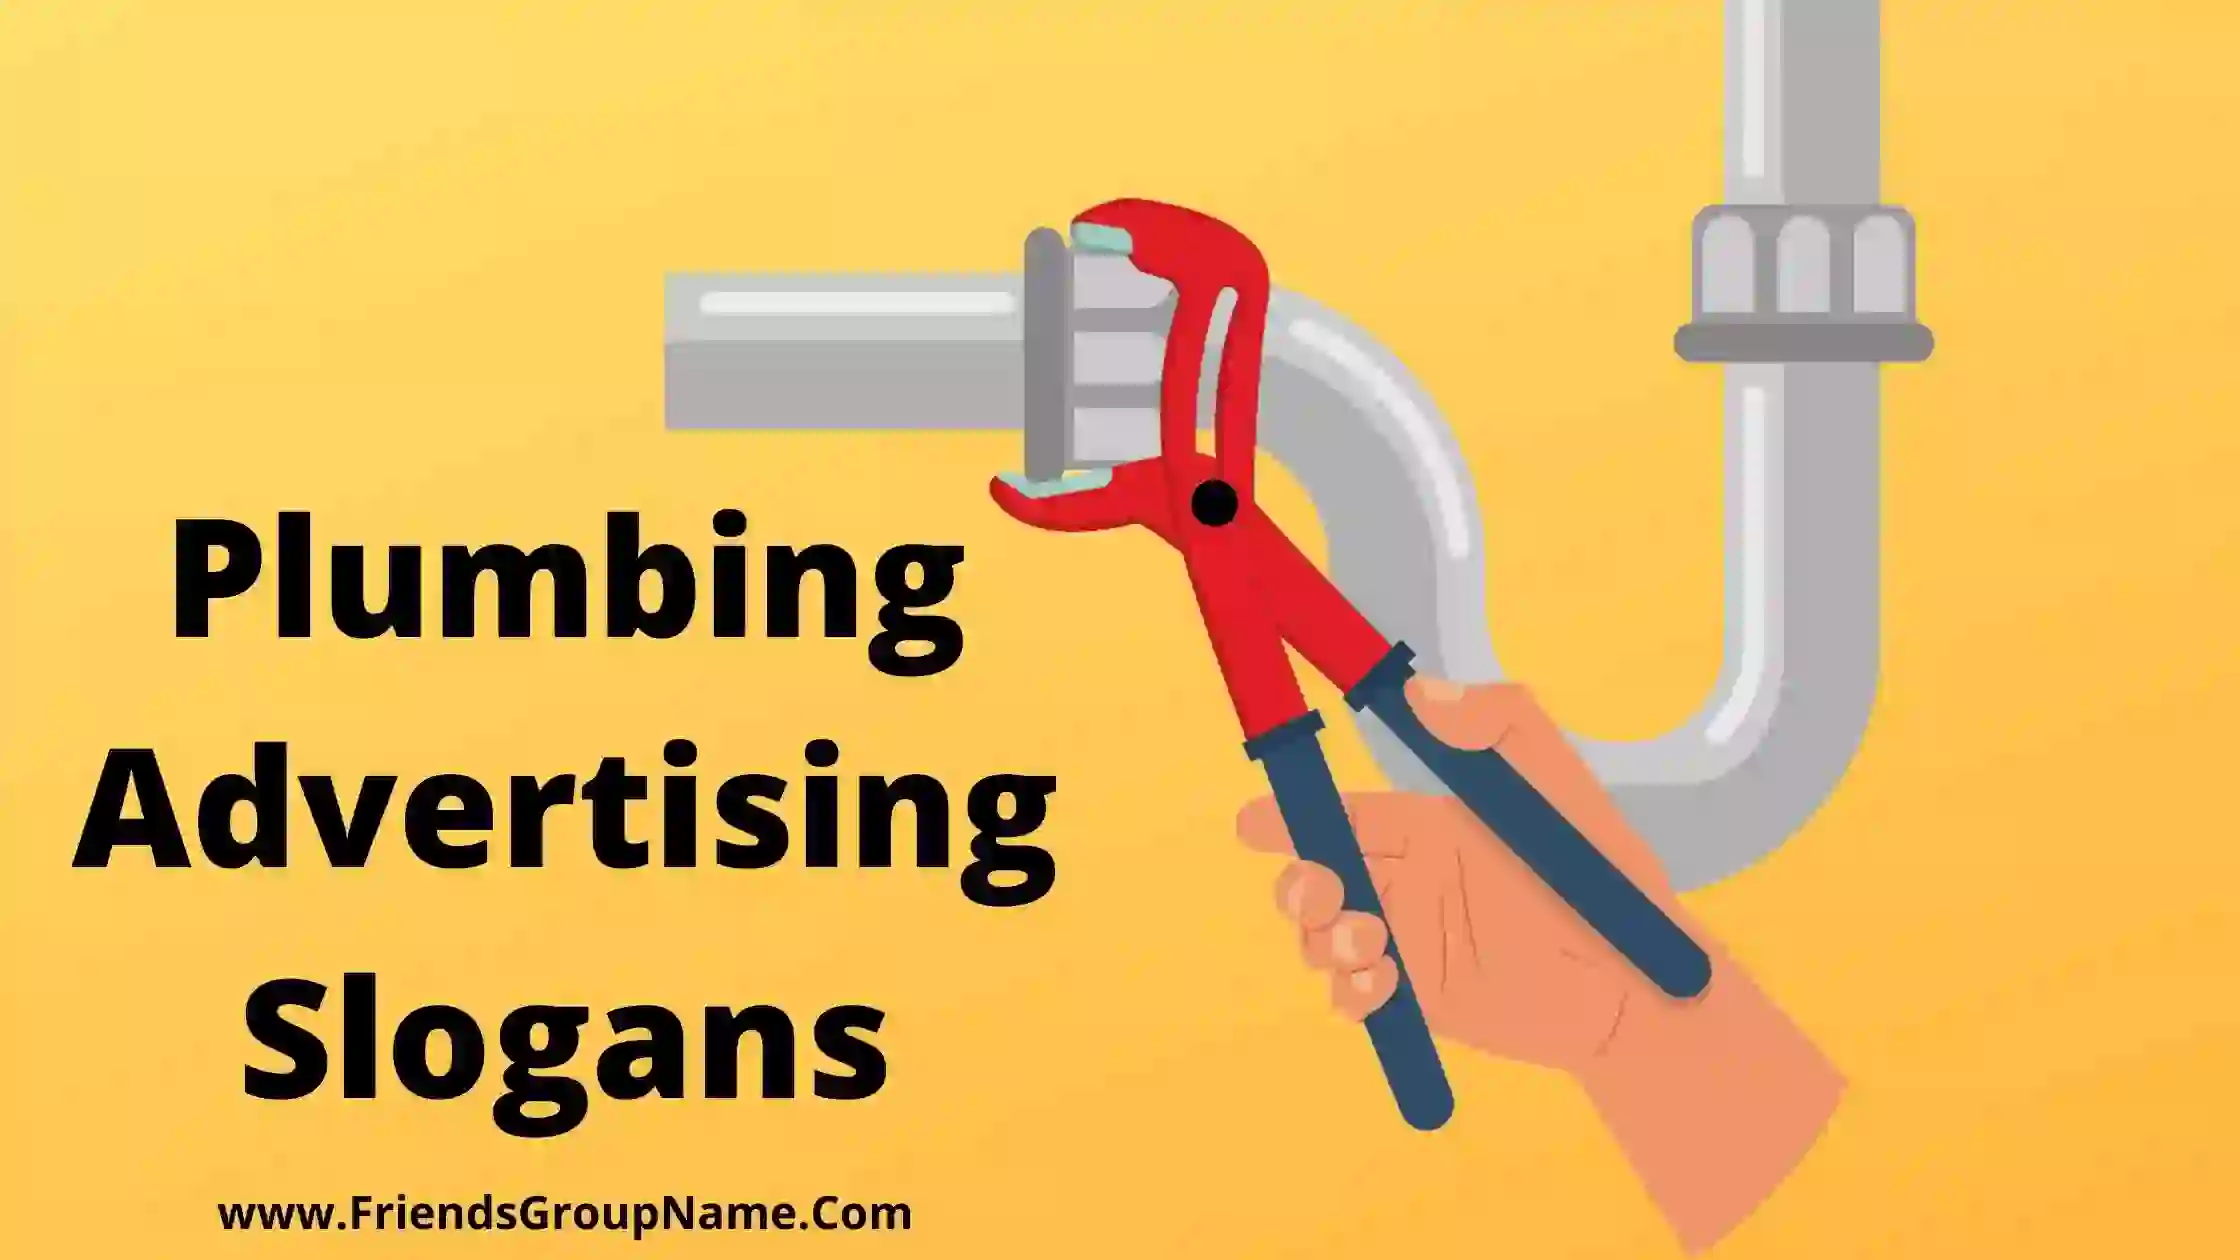 Plumbing Advertising Slogans